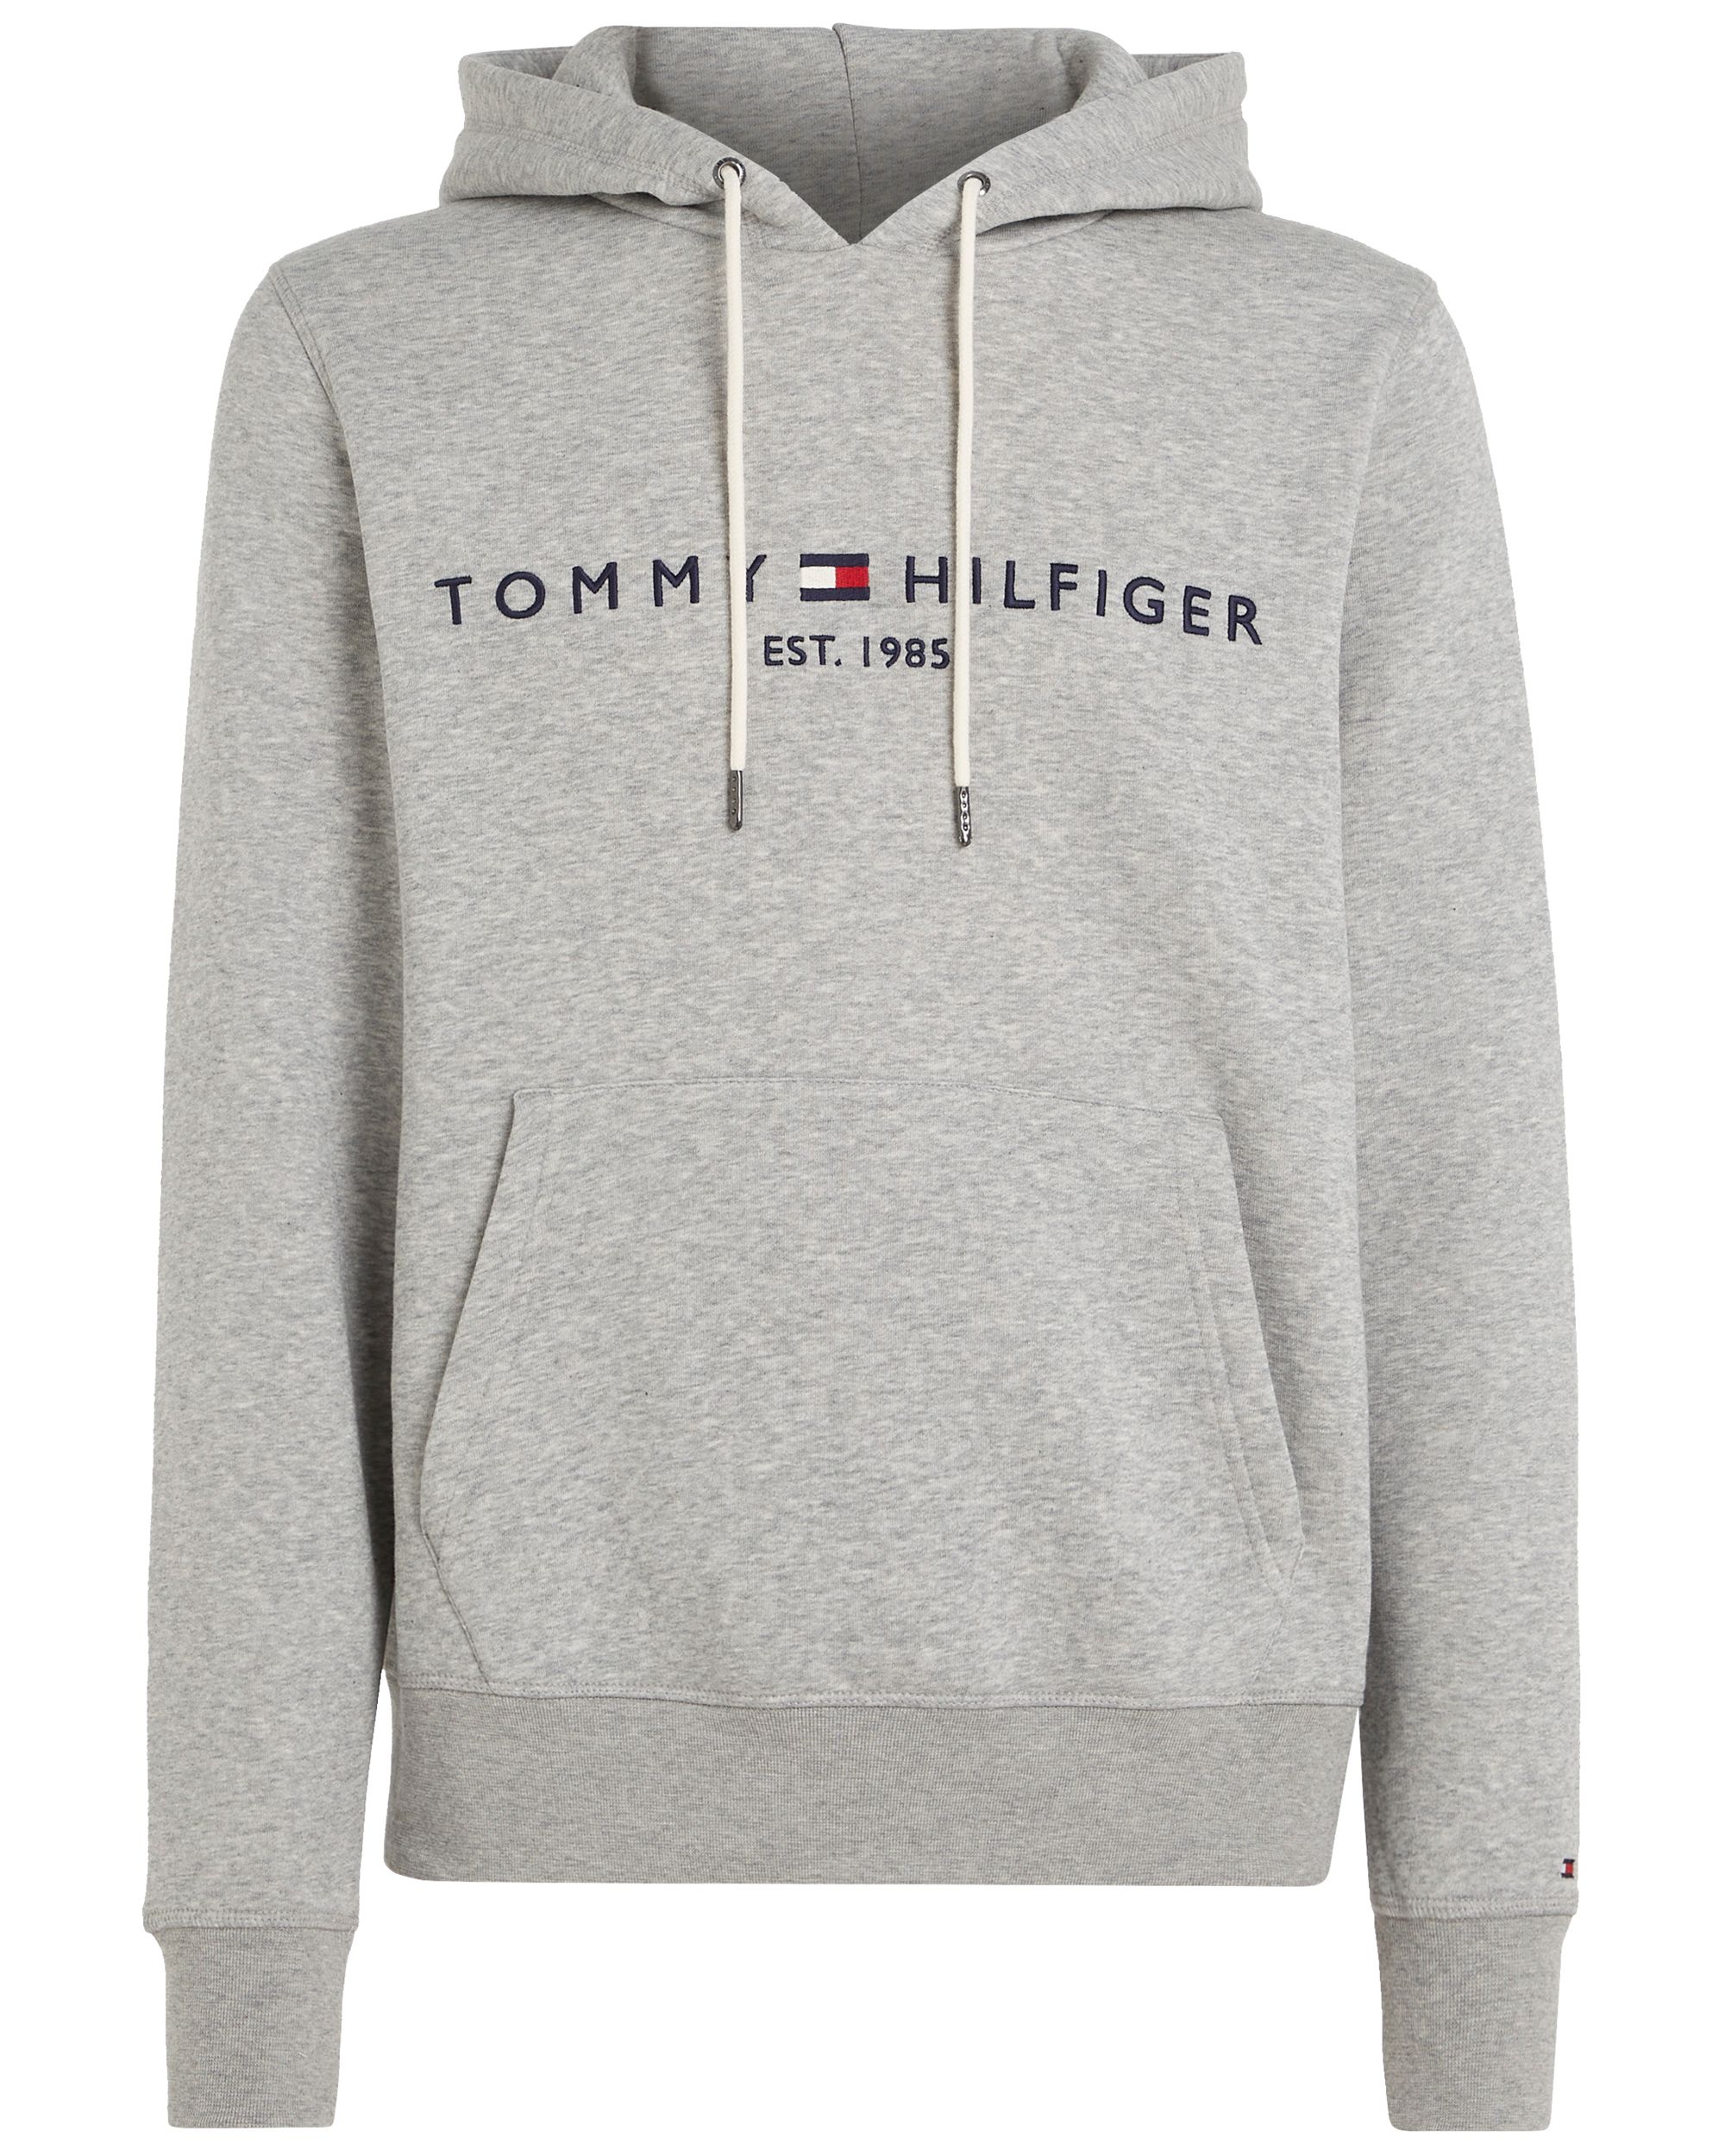 Tommy Hilfiger Menswear Hoodie Licht grijs 056751-001-L